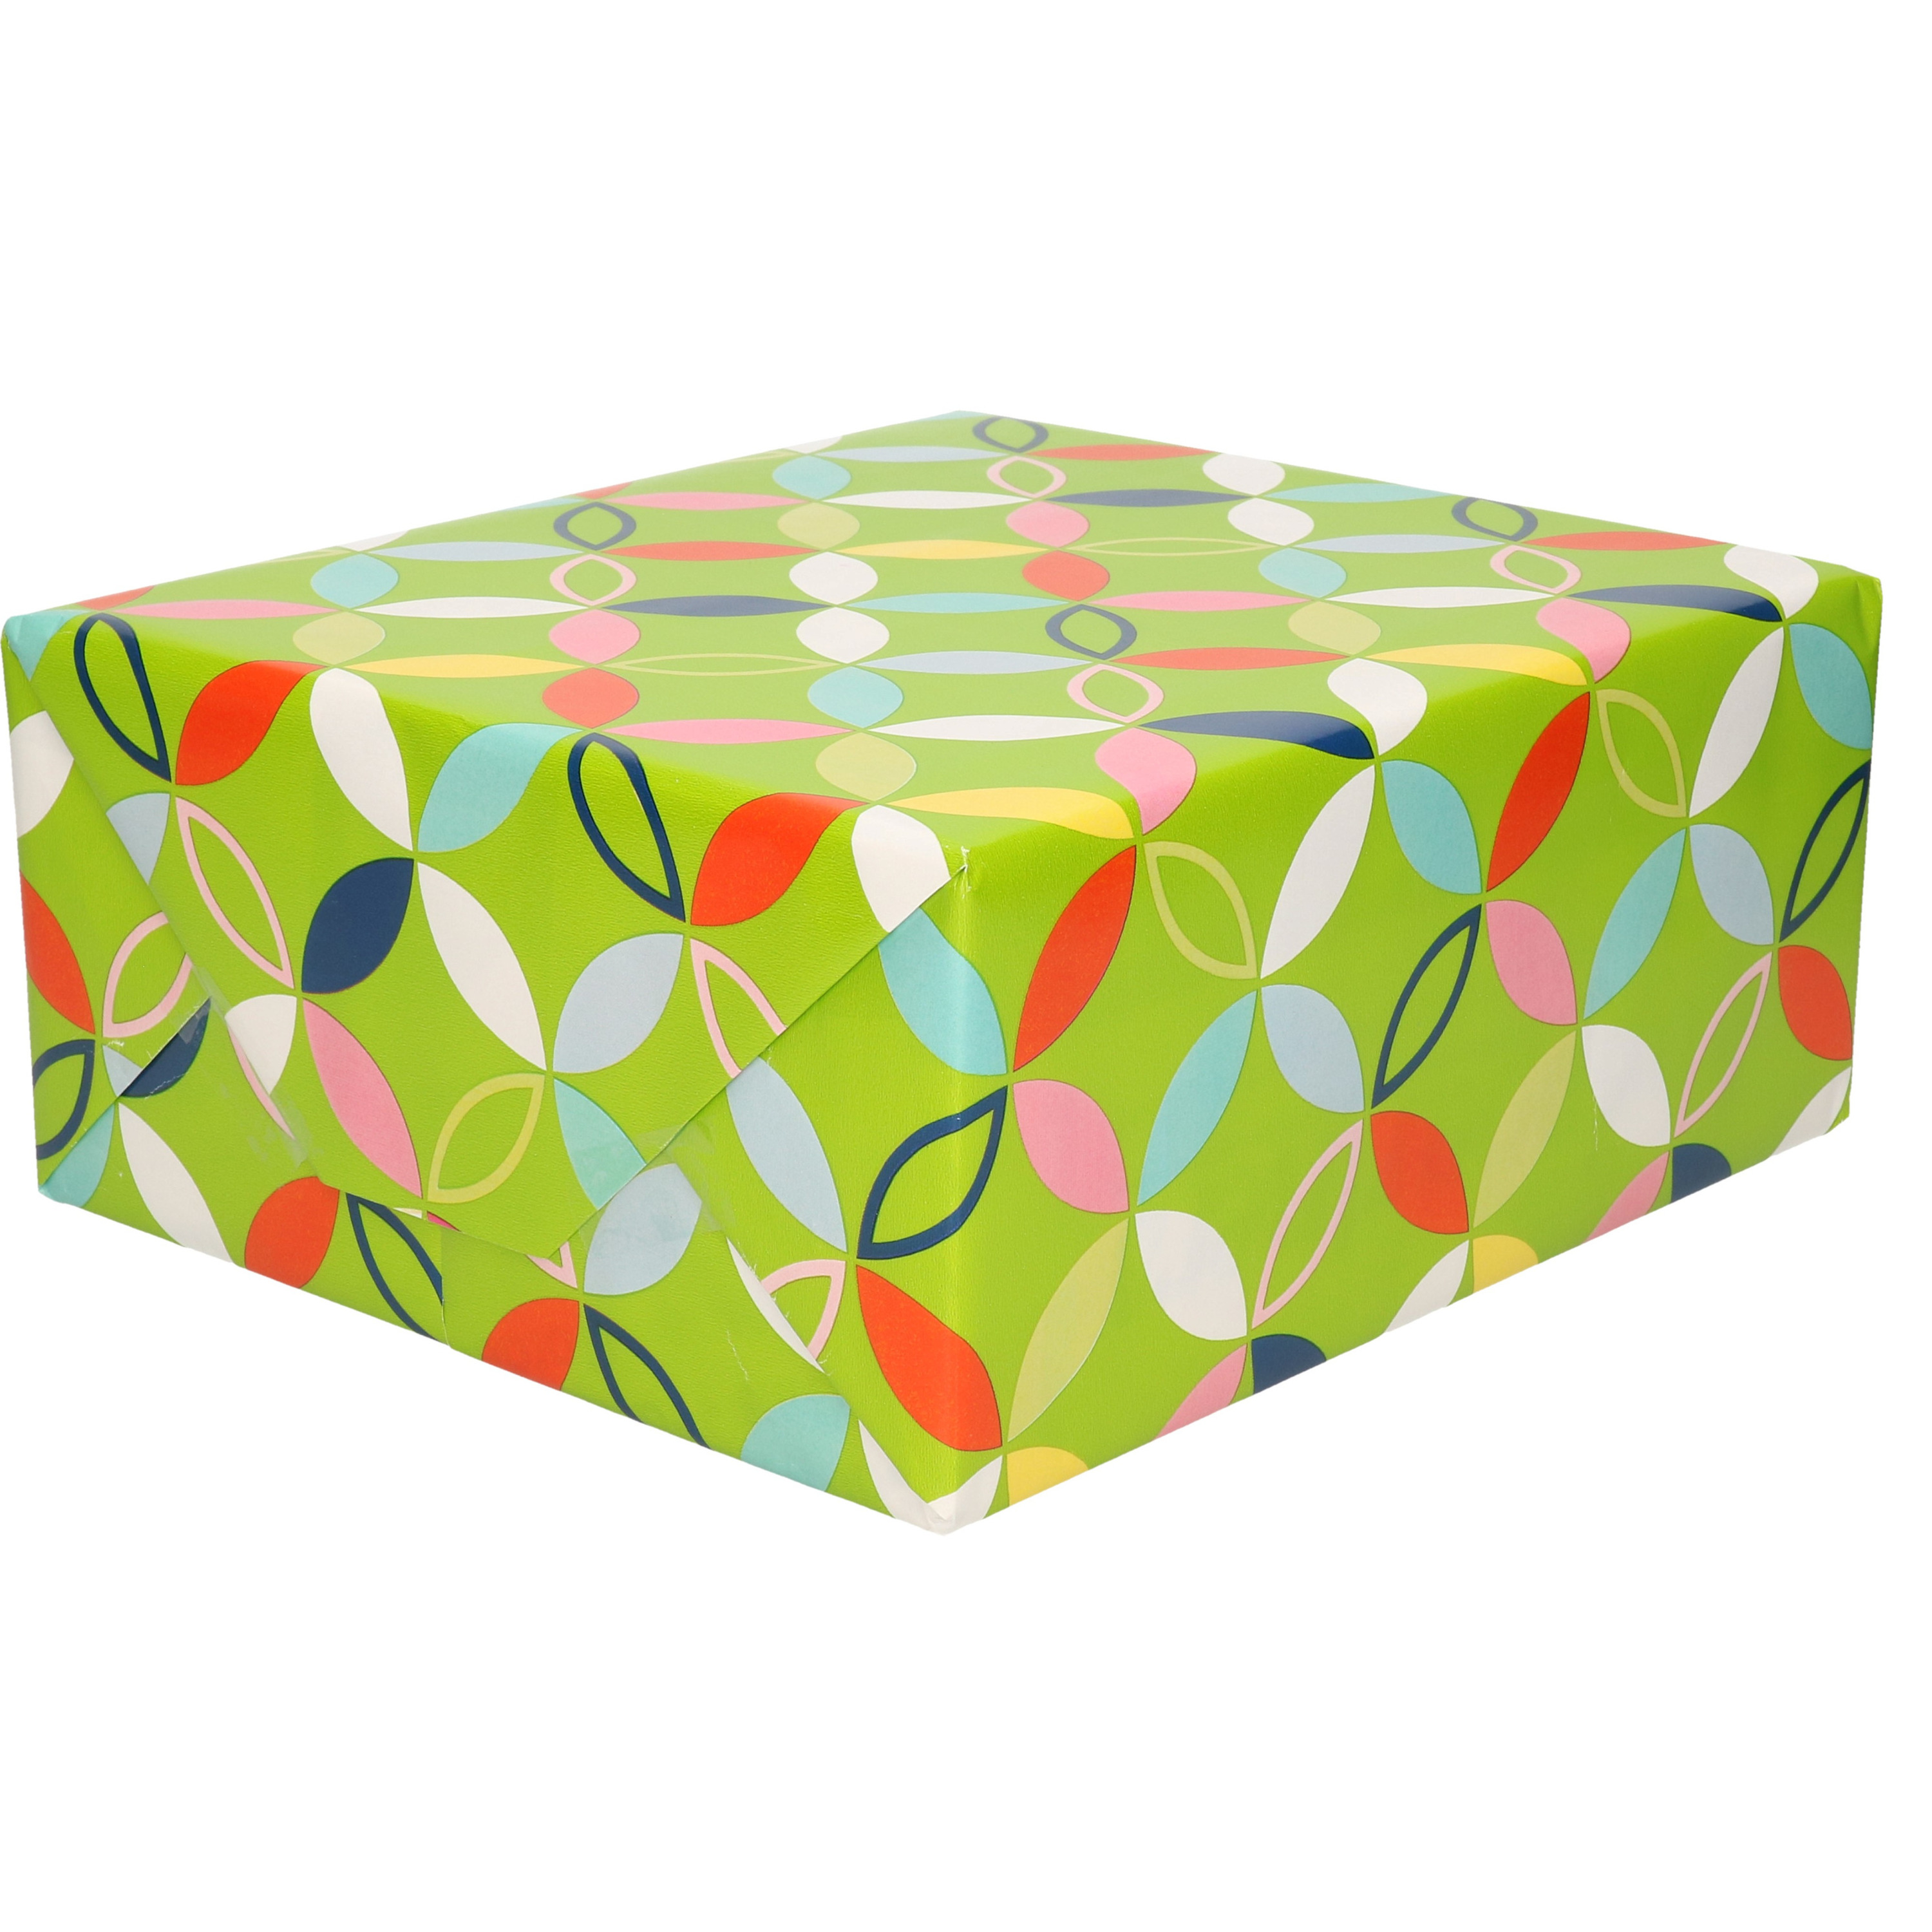 1x Inpakpapier cadeaupapier groen met bloem figuren motief 200 x 70 cm rol